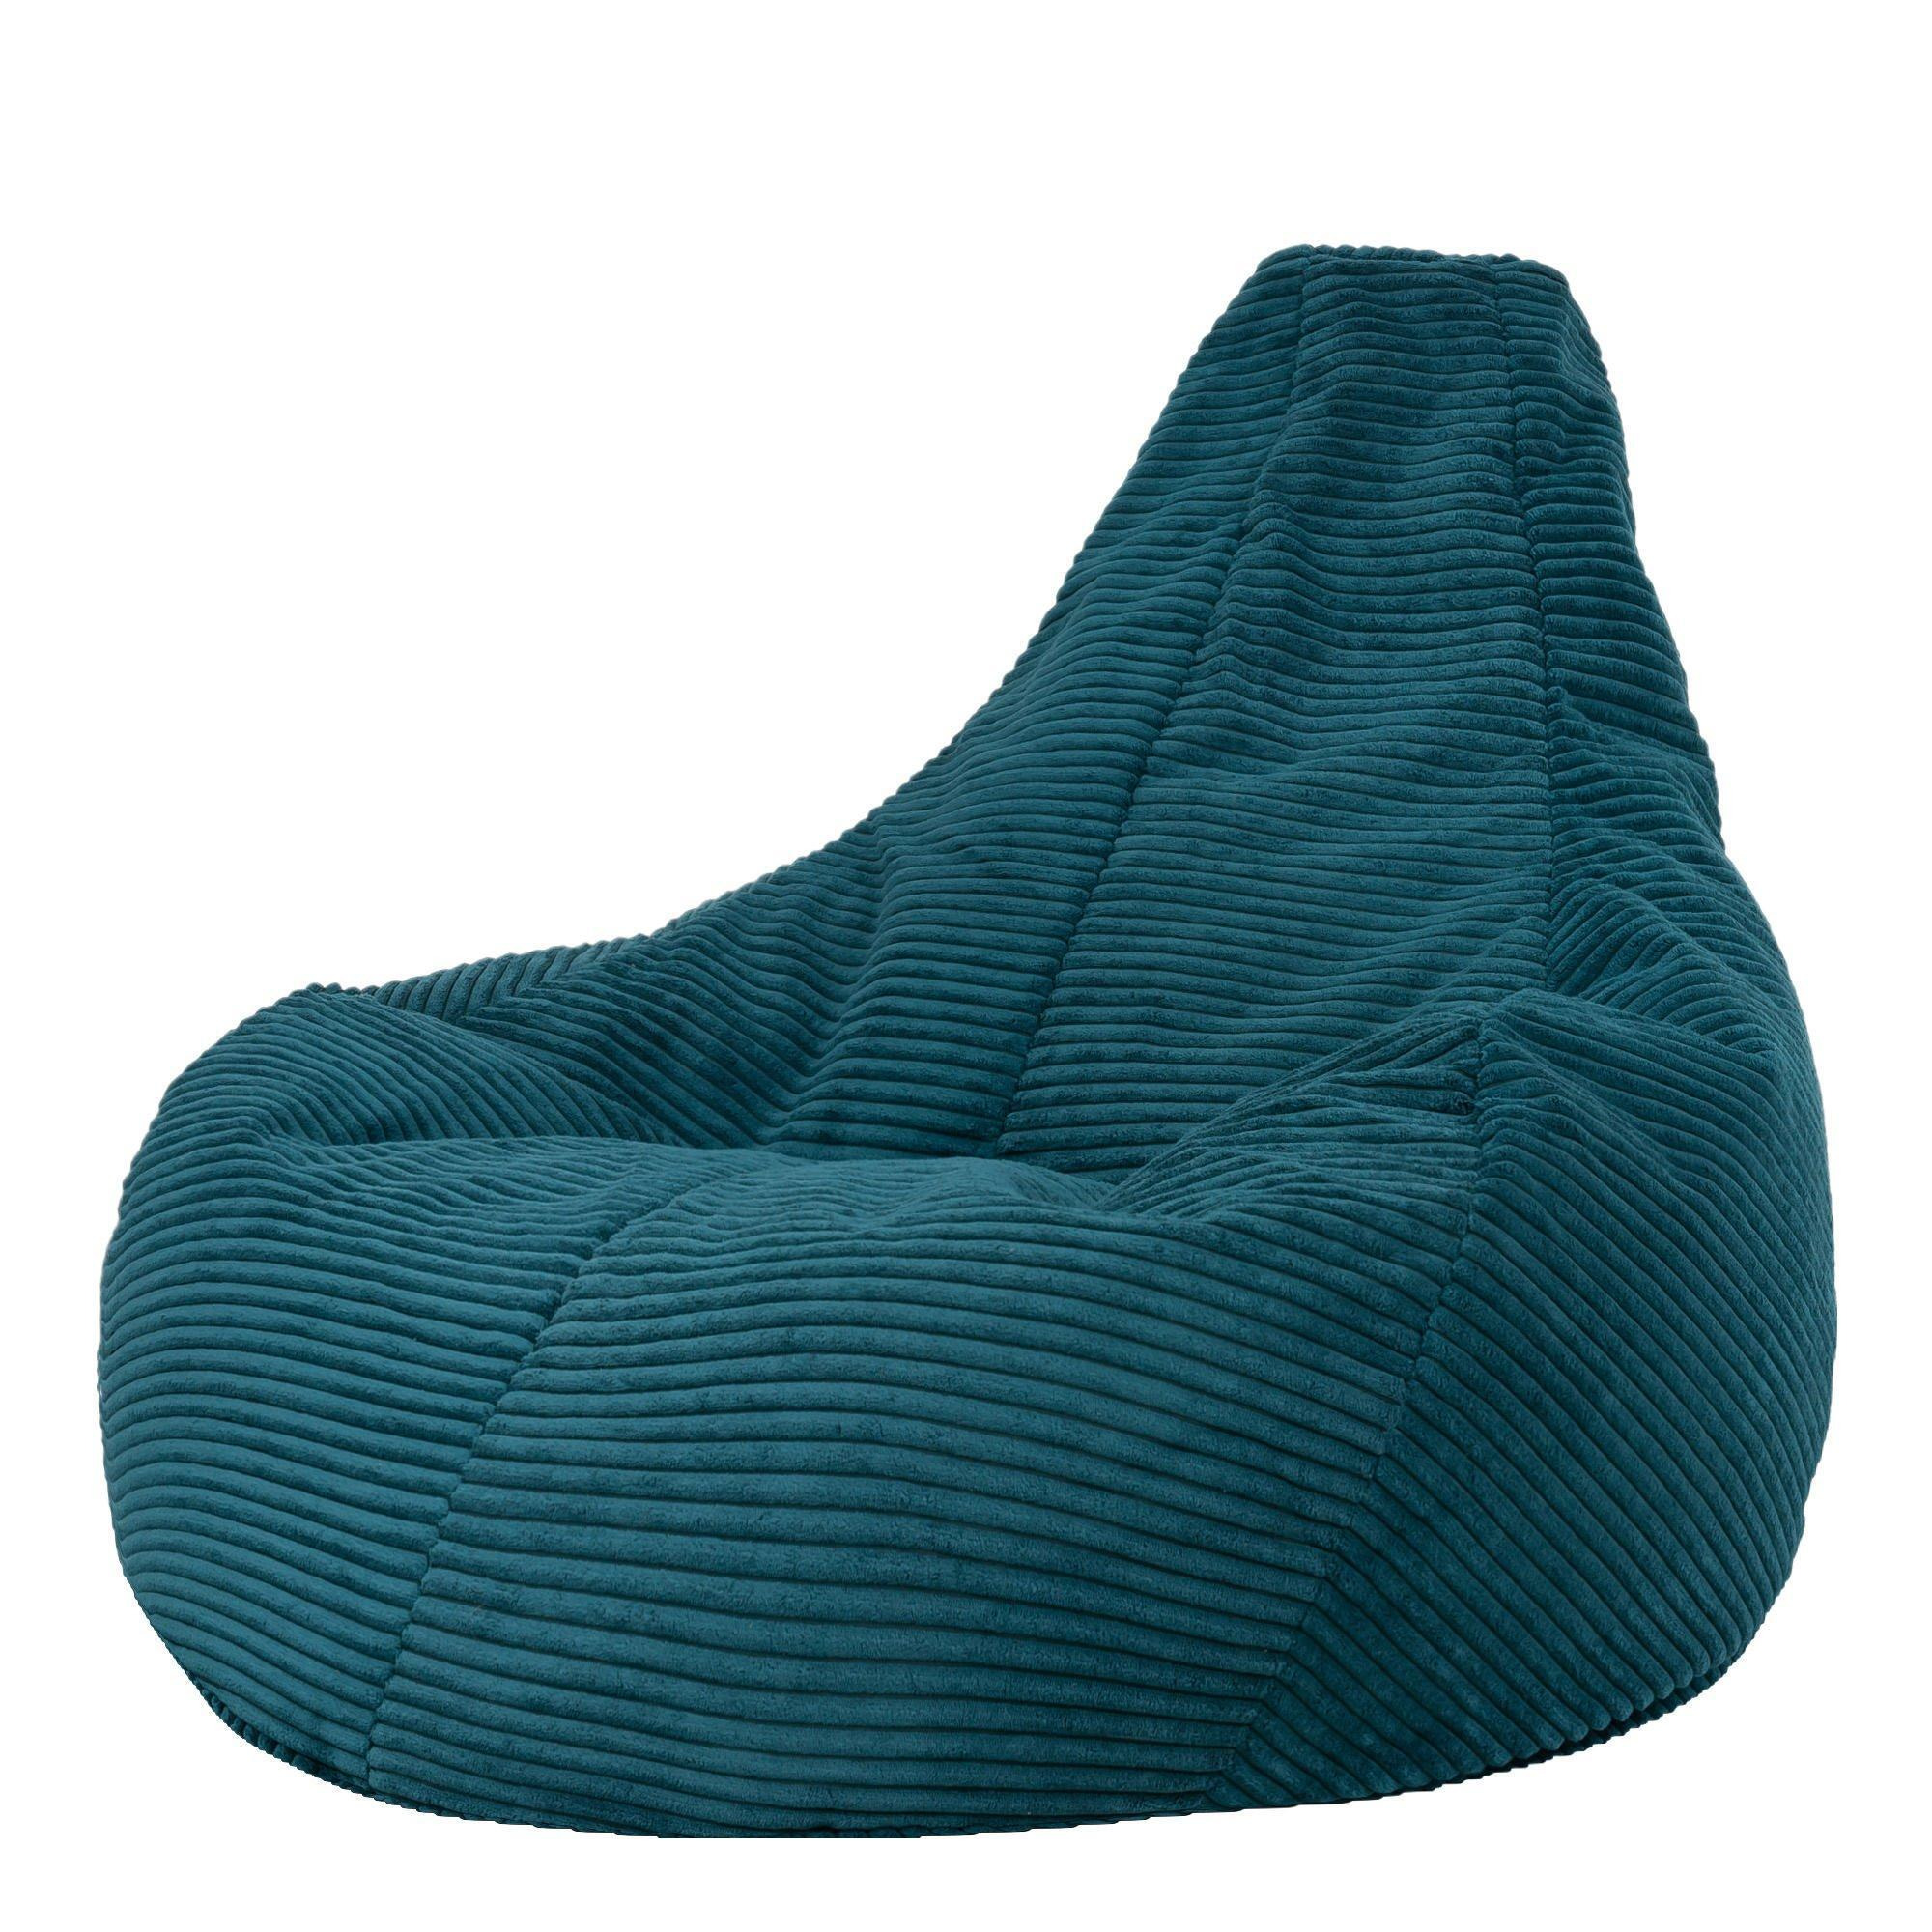 Dalton Cord Bean Bag Chair Recliner Bean Bags - image 1